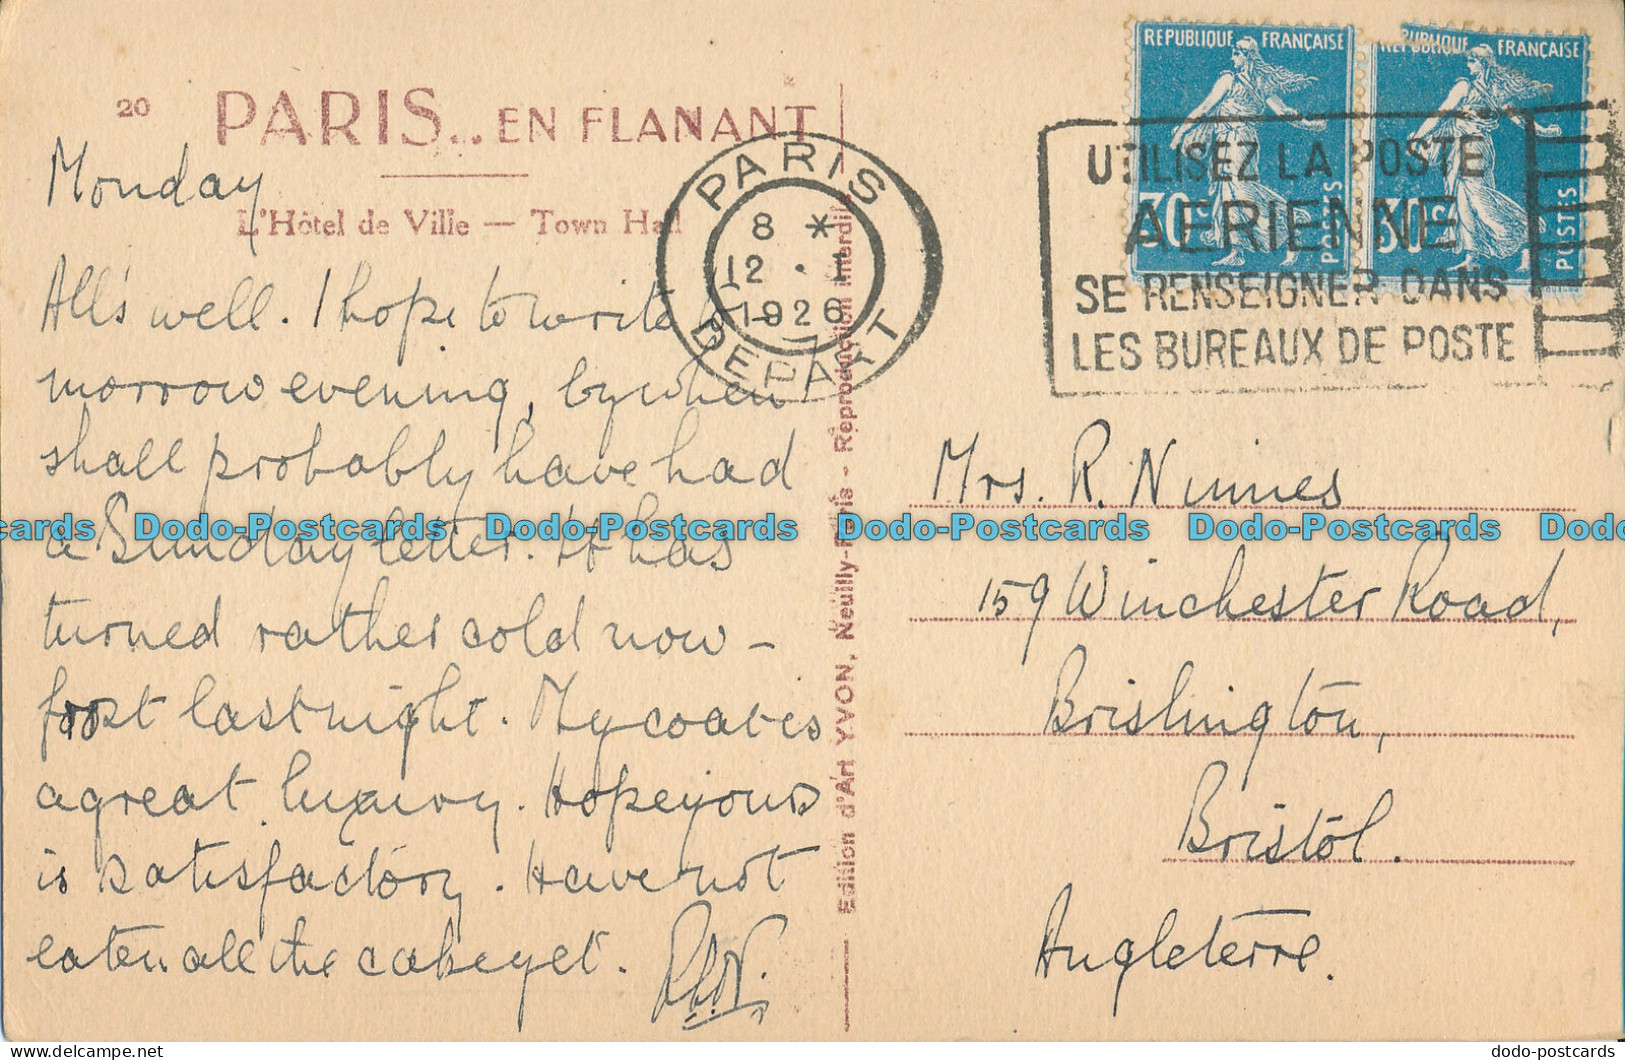 R004865 Paris. L Hotel De Ville. Yvon. 1926 - Welt